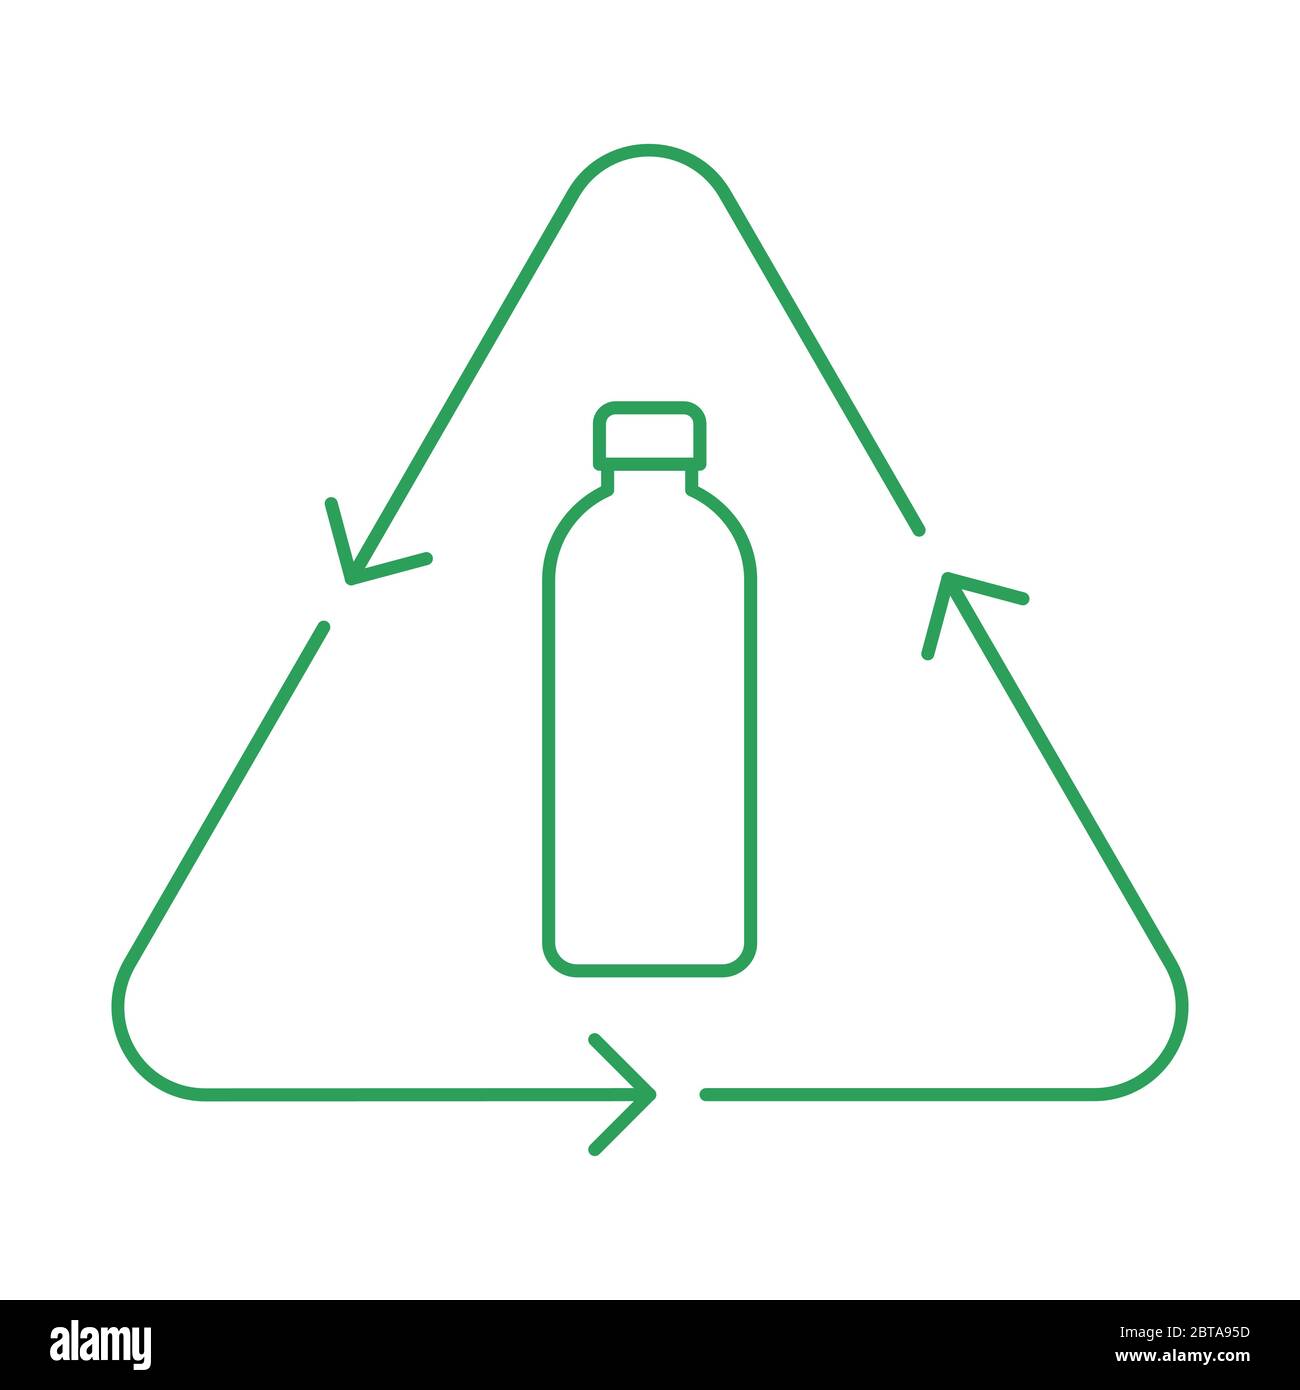 Symbol für dünne Linie der Flasche recyceln. Plastikflasche in einem Dreieck mit Pfeilen. Schild für wiederverwendbare Glasflaschen. Grüne Umrandung auf weißem Hintergrund. Vektor Stock Vektor